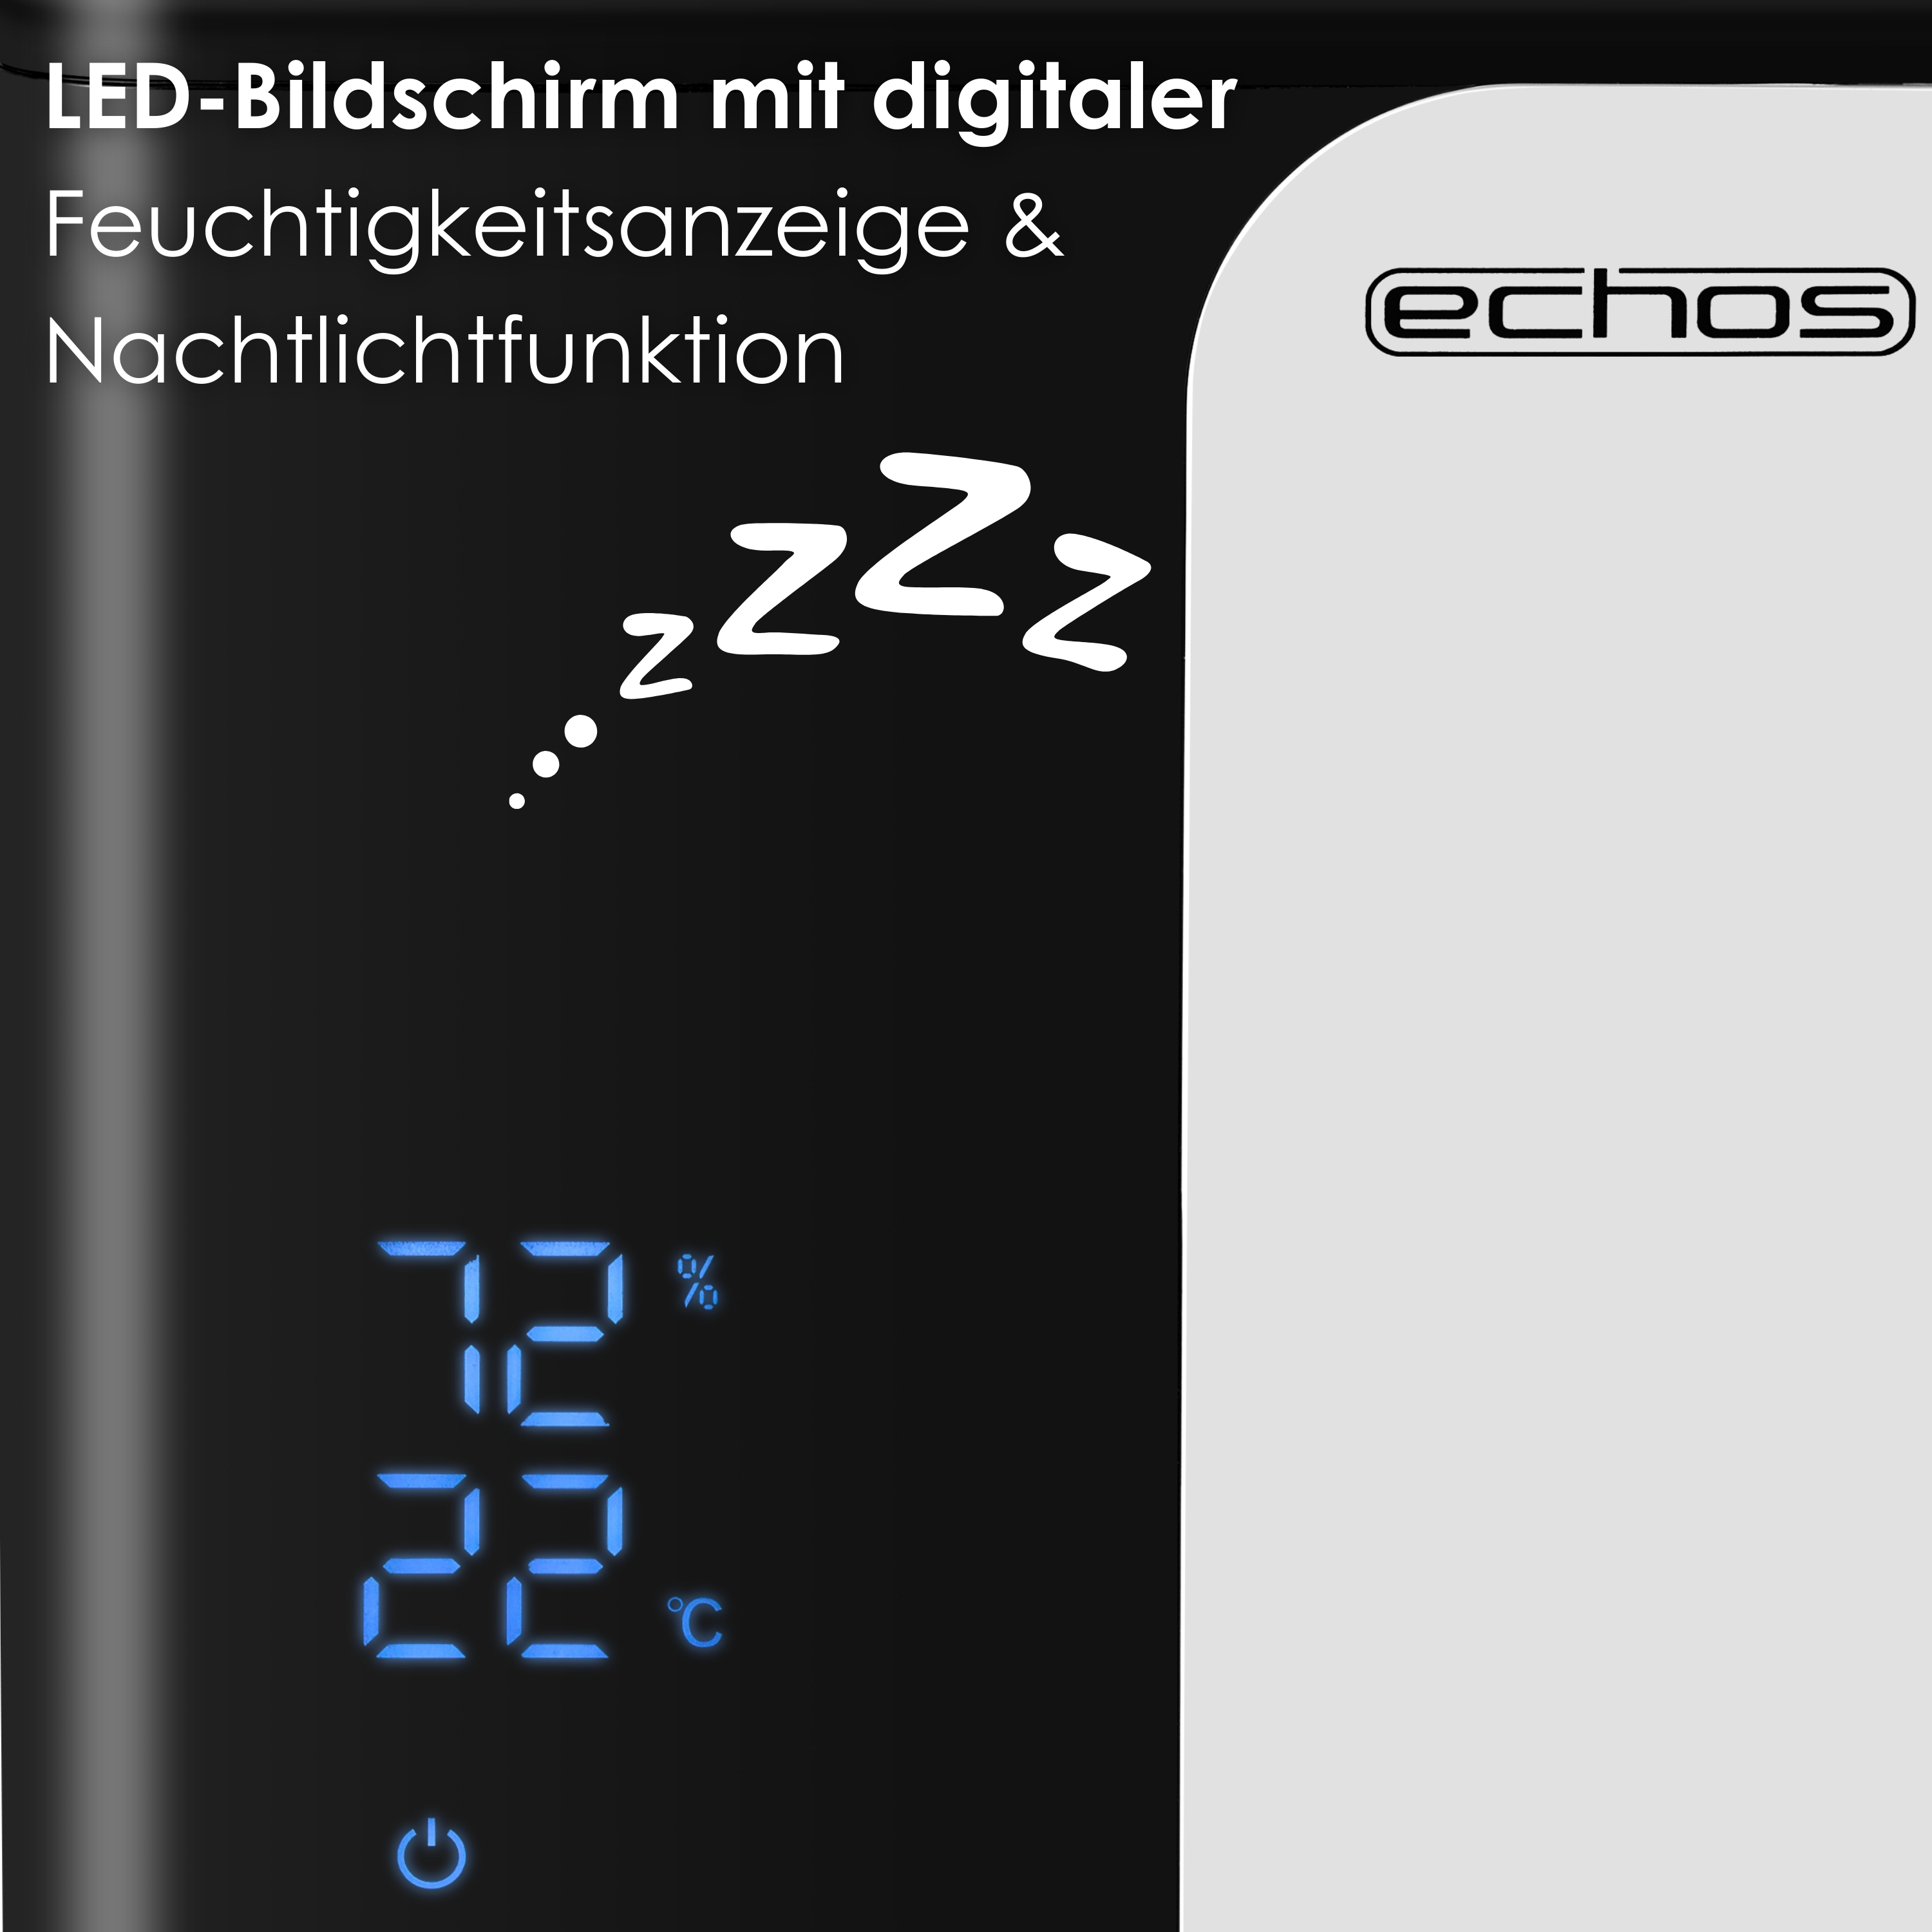 Echos Ultraschall Luftbefeuchter 5 Liter WIFI Smart Life App